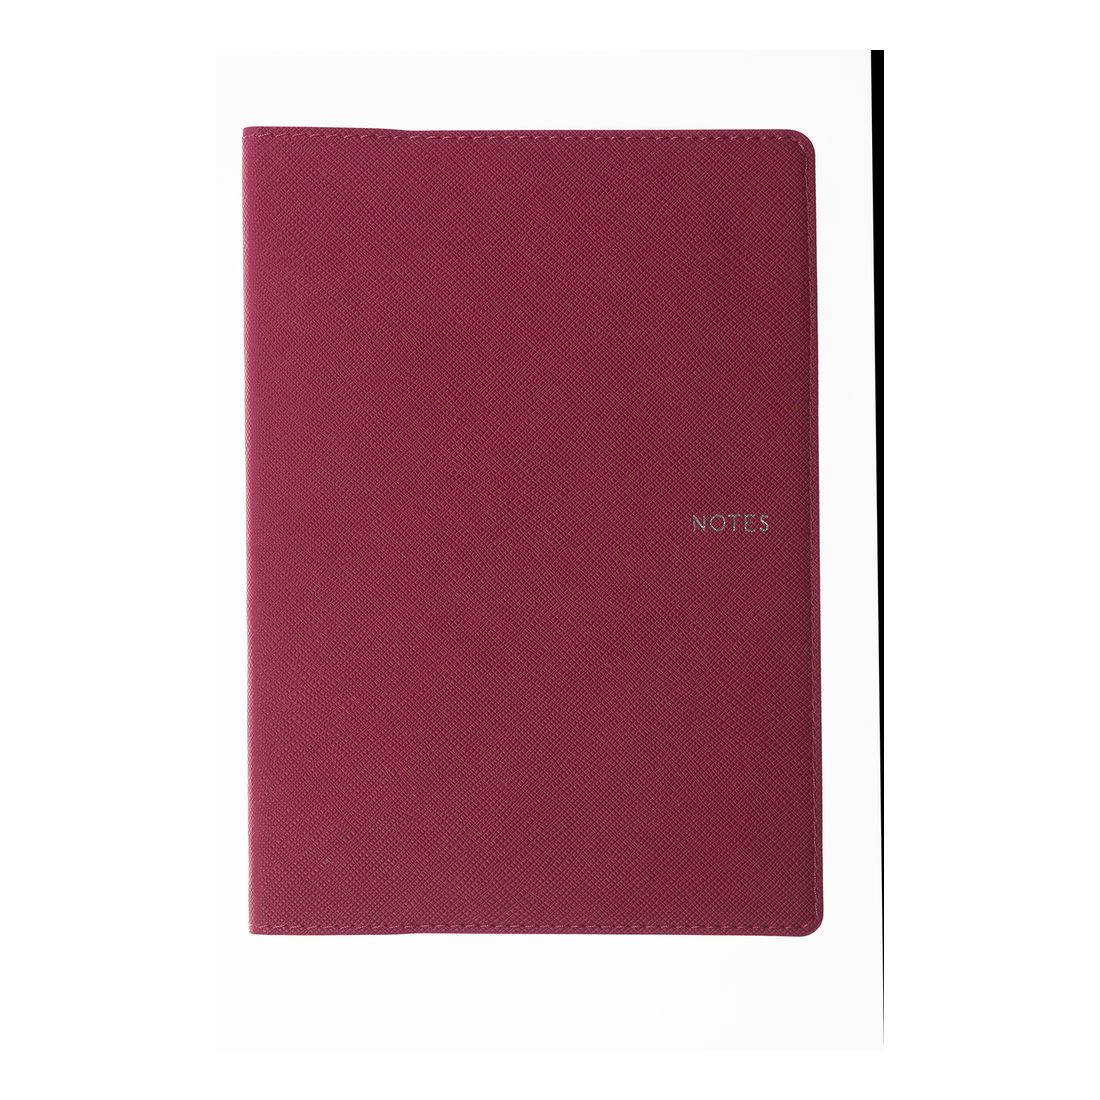 Collins Debden Metropolitan Melbourne Ruled B6 Notebook Pink